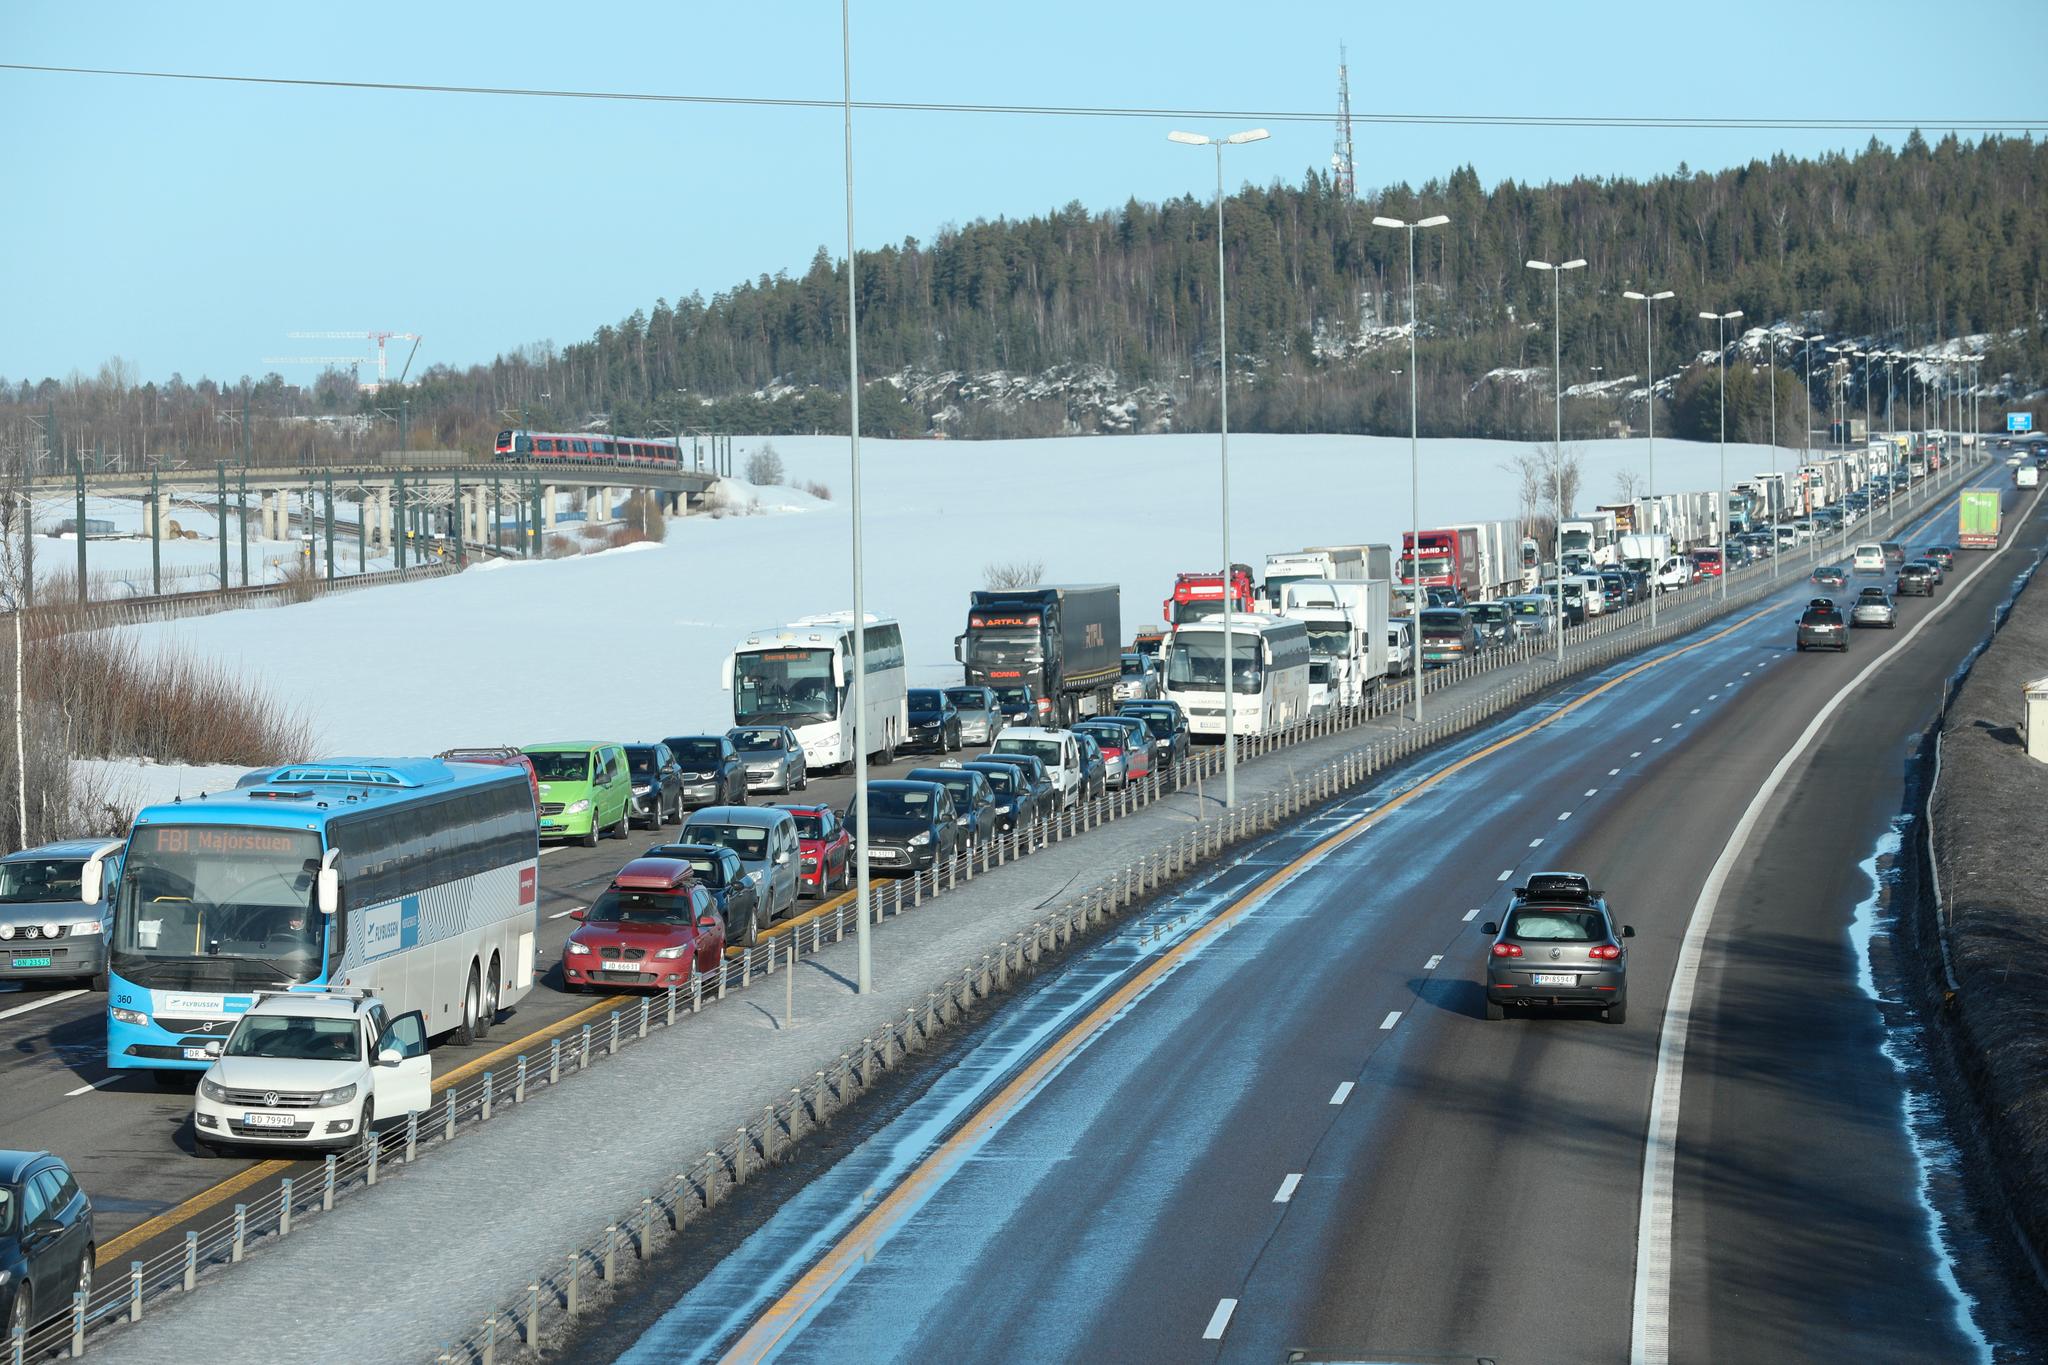  Det er lange køer på E6 etter ulykken, som sperrer veien i retning Oslo.  